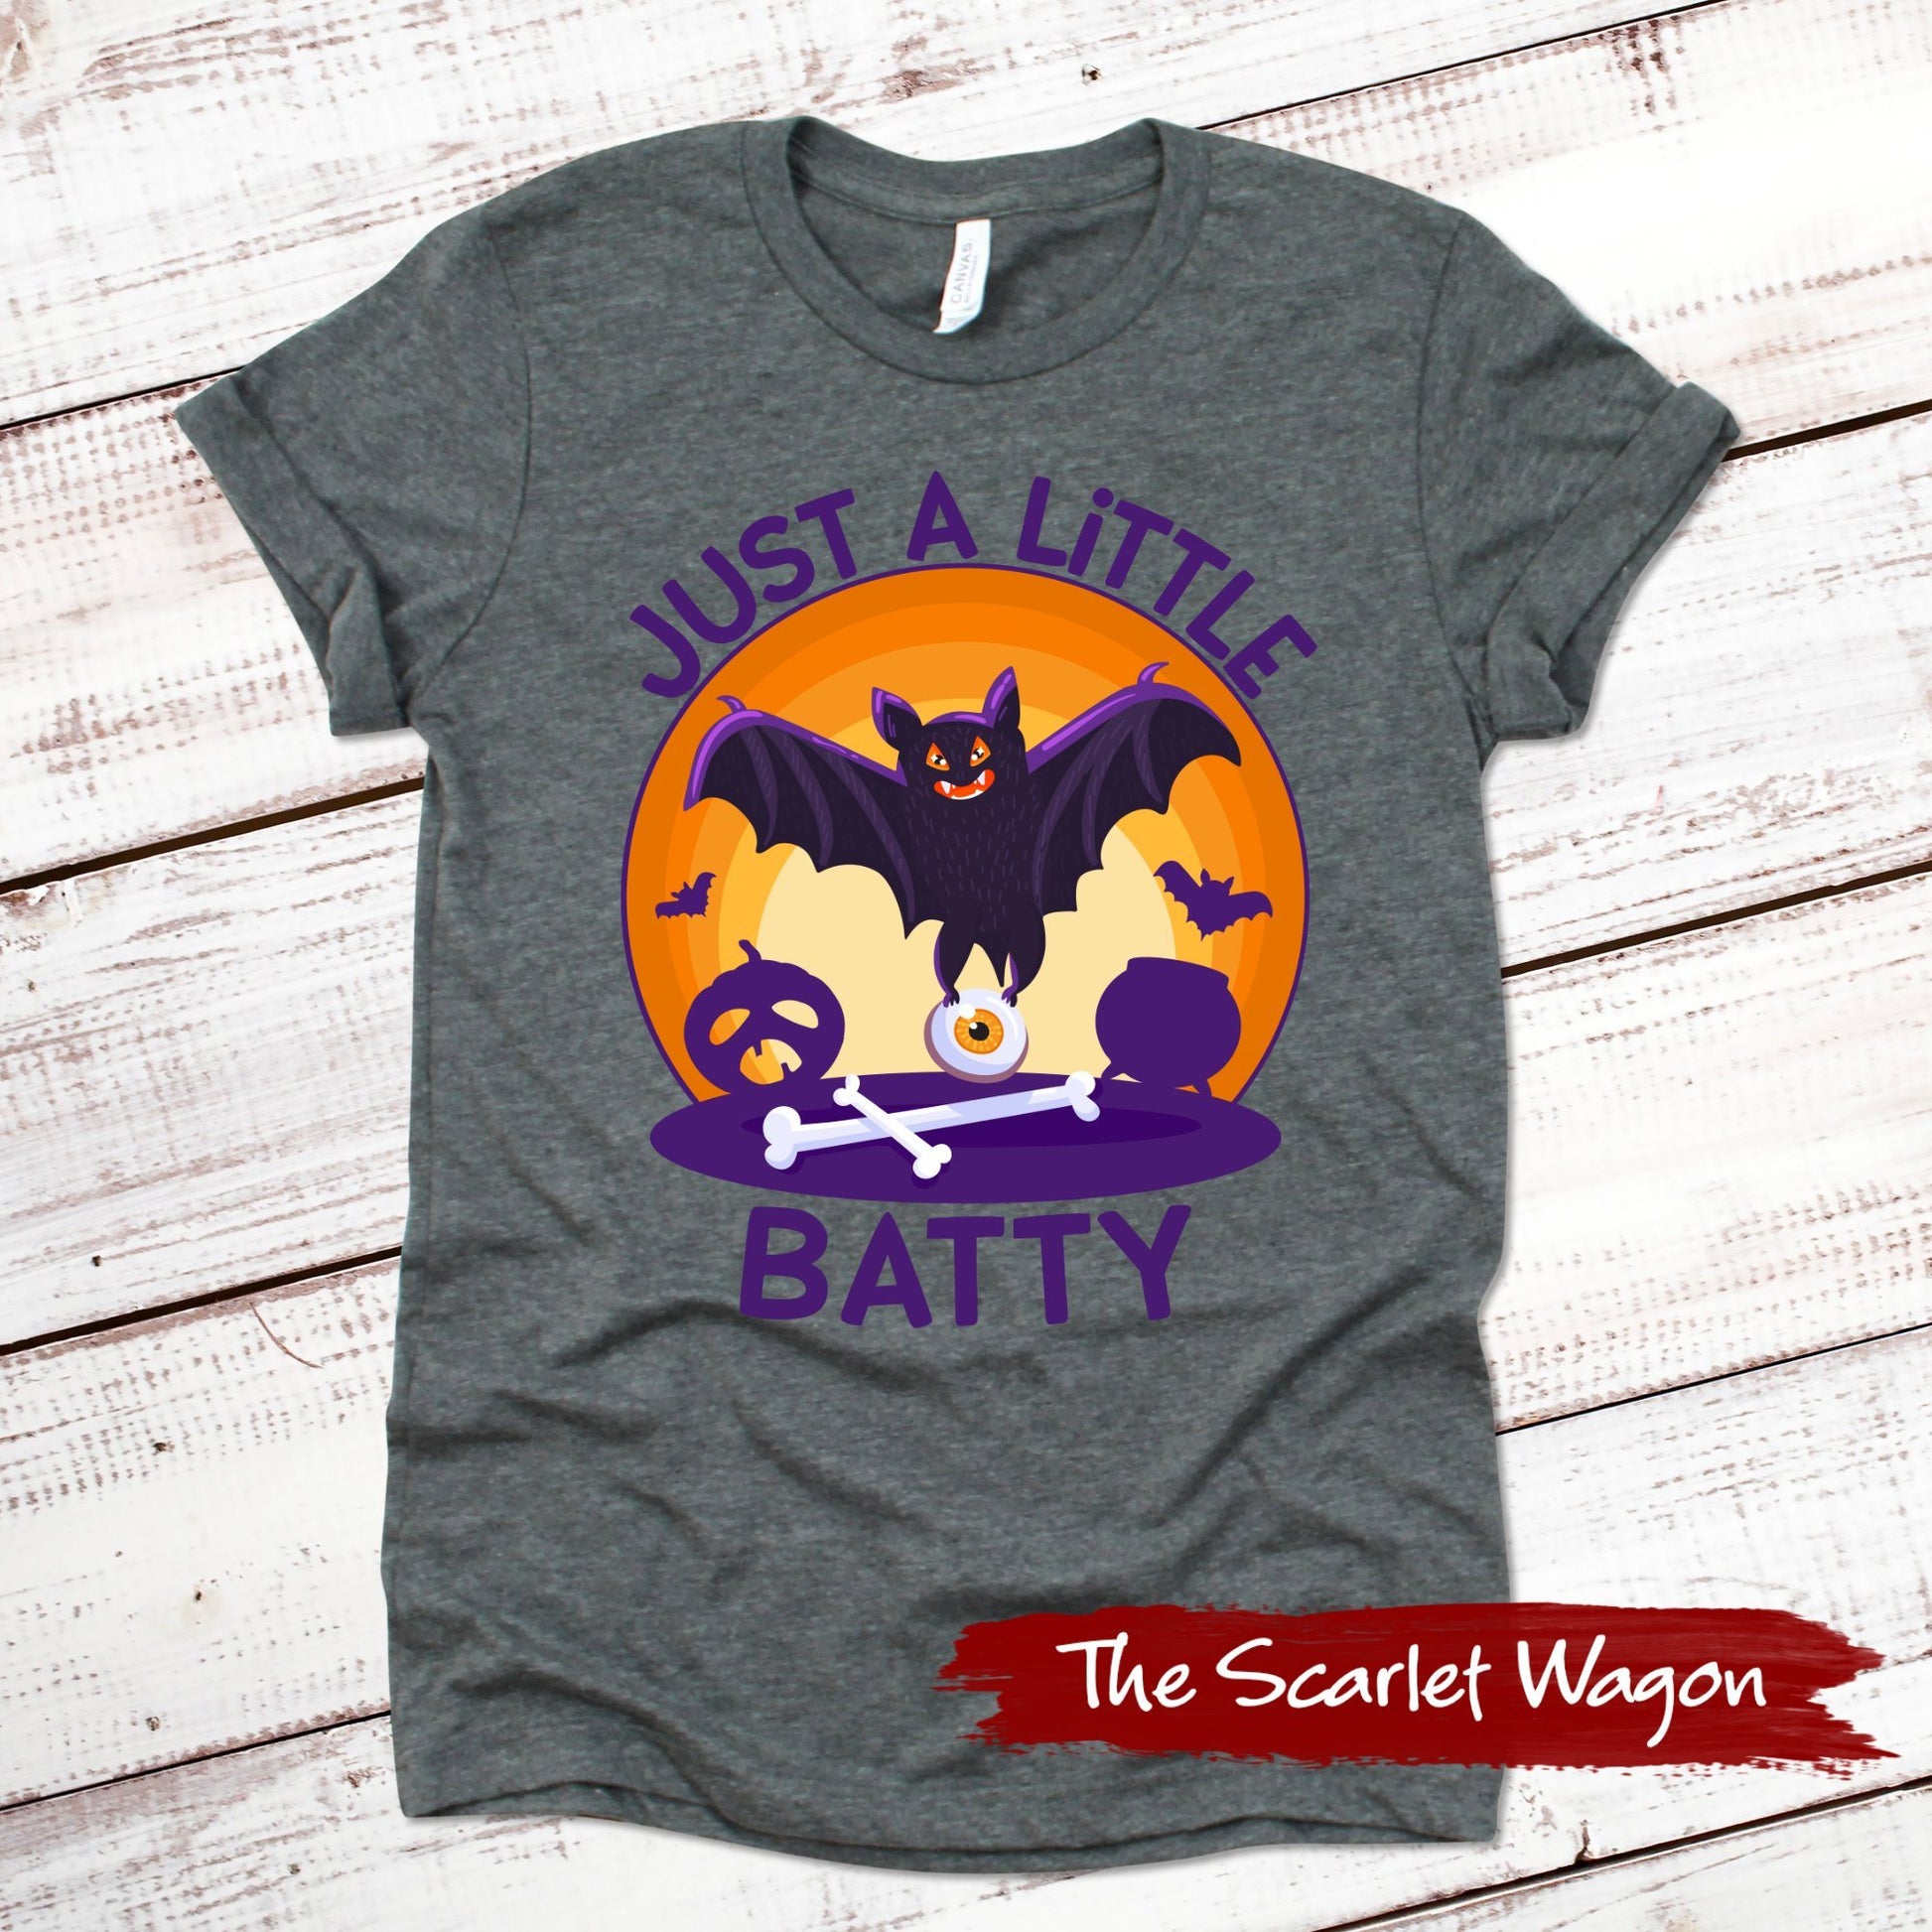 Just a Little Batty Halloween Shirt Scarlet Wagon Deep Heather Gray XS 